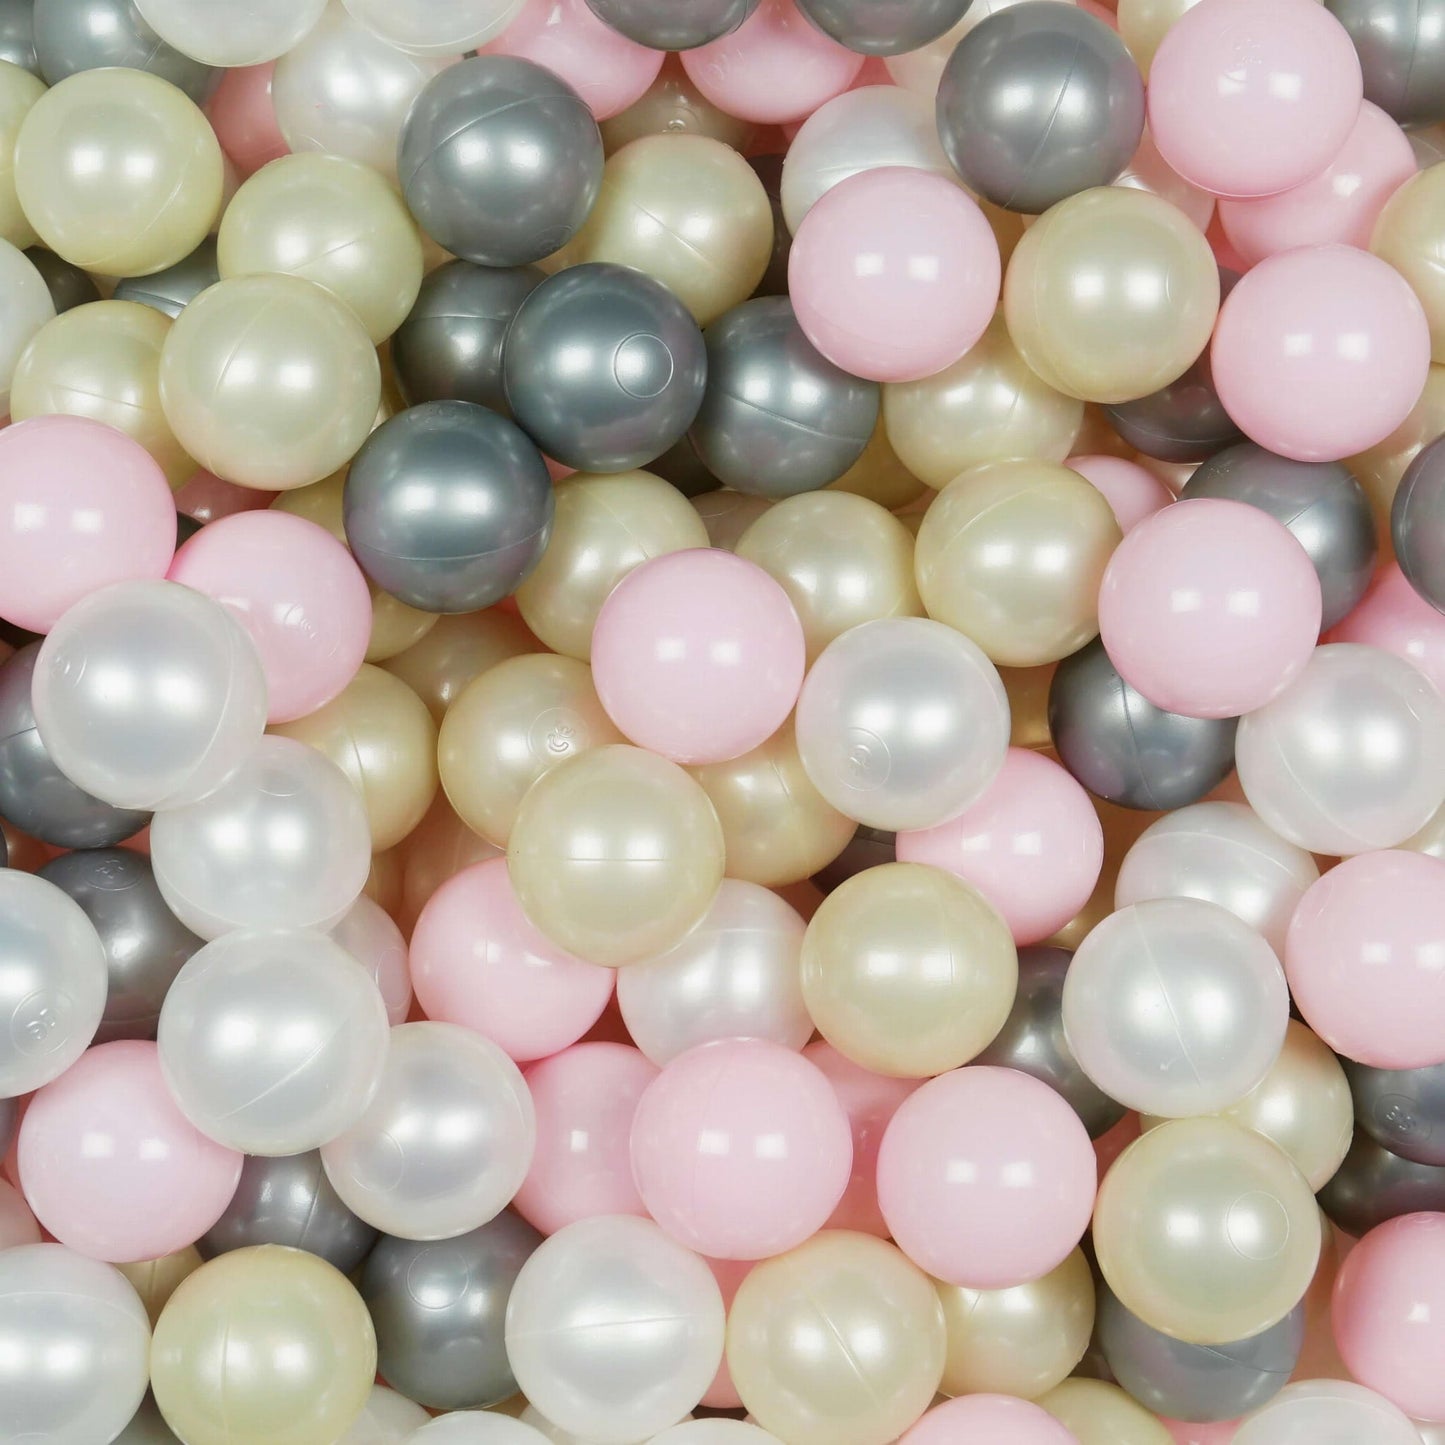 Balles de jeu ø7cm 100 pièces rose clair, or clair, perle, argent